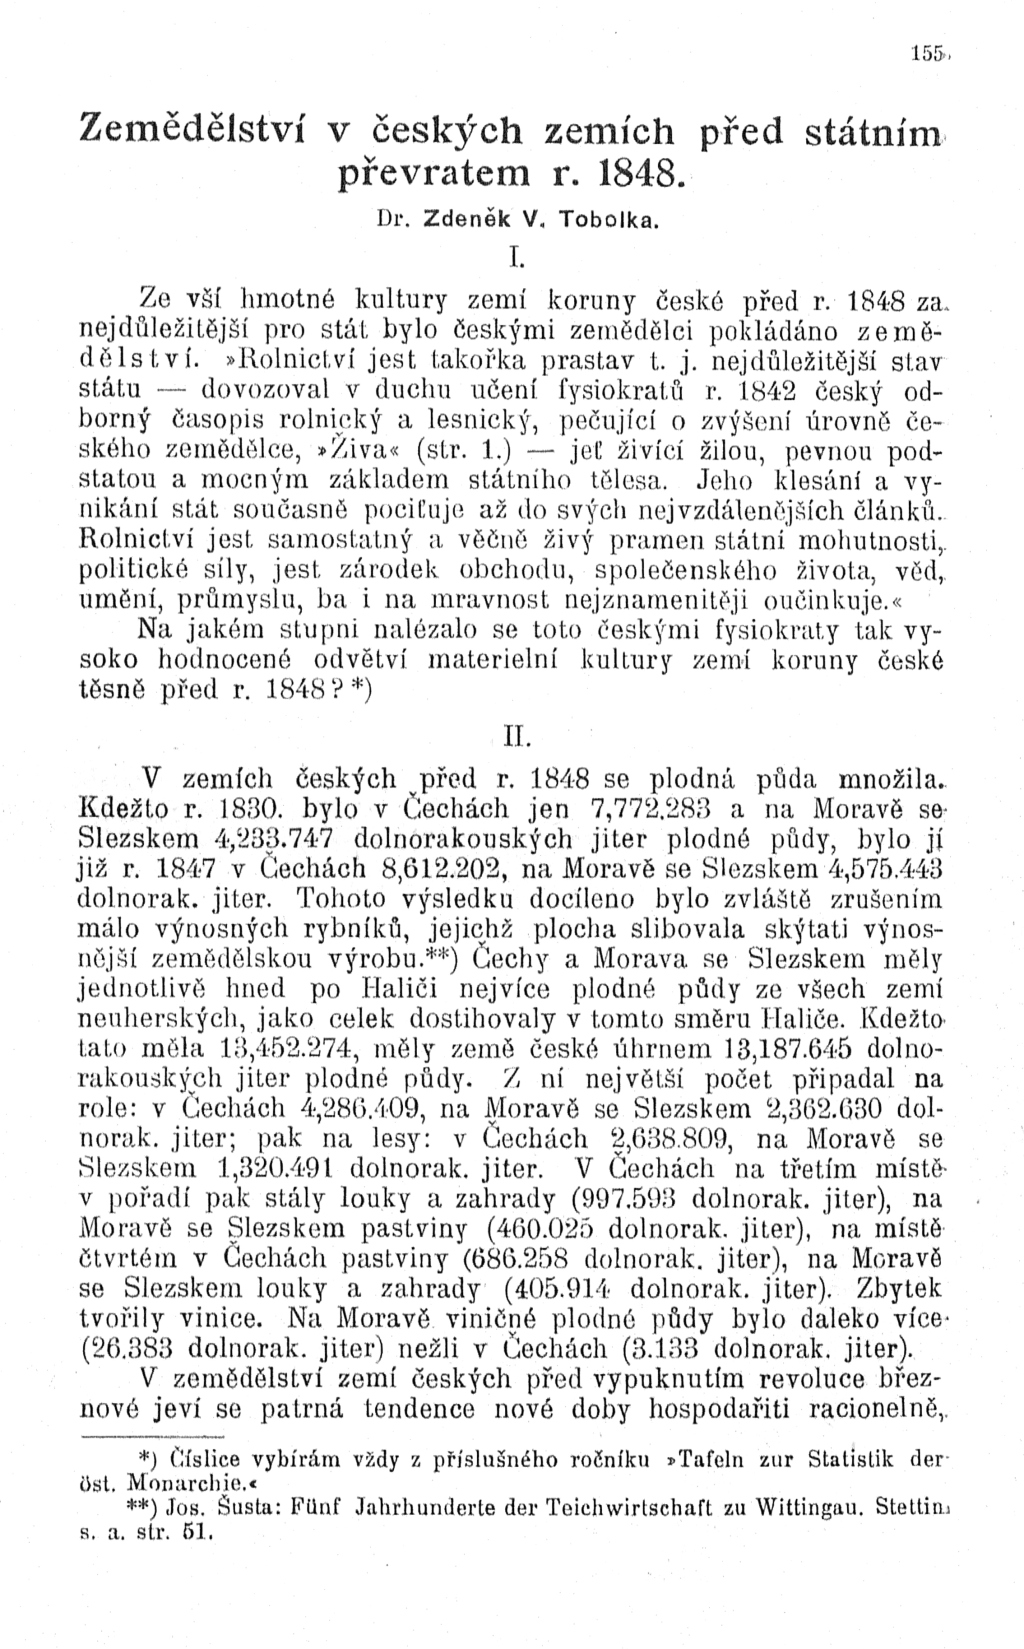 Zemědělství v českých zemích před státním převratem r. 1848